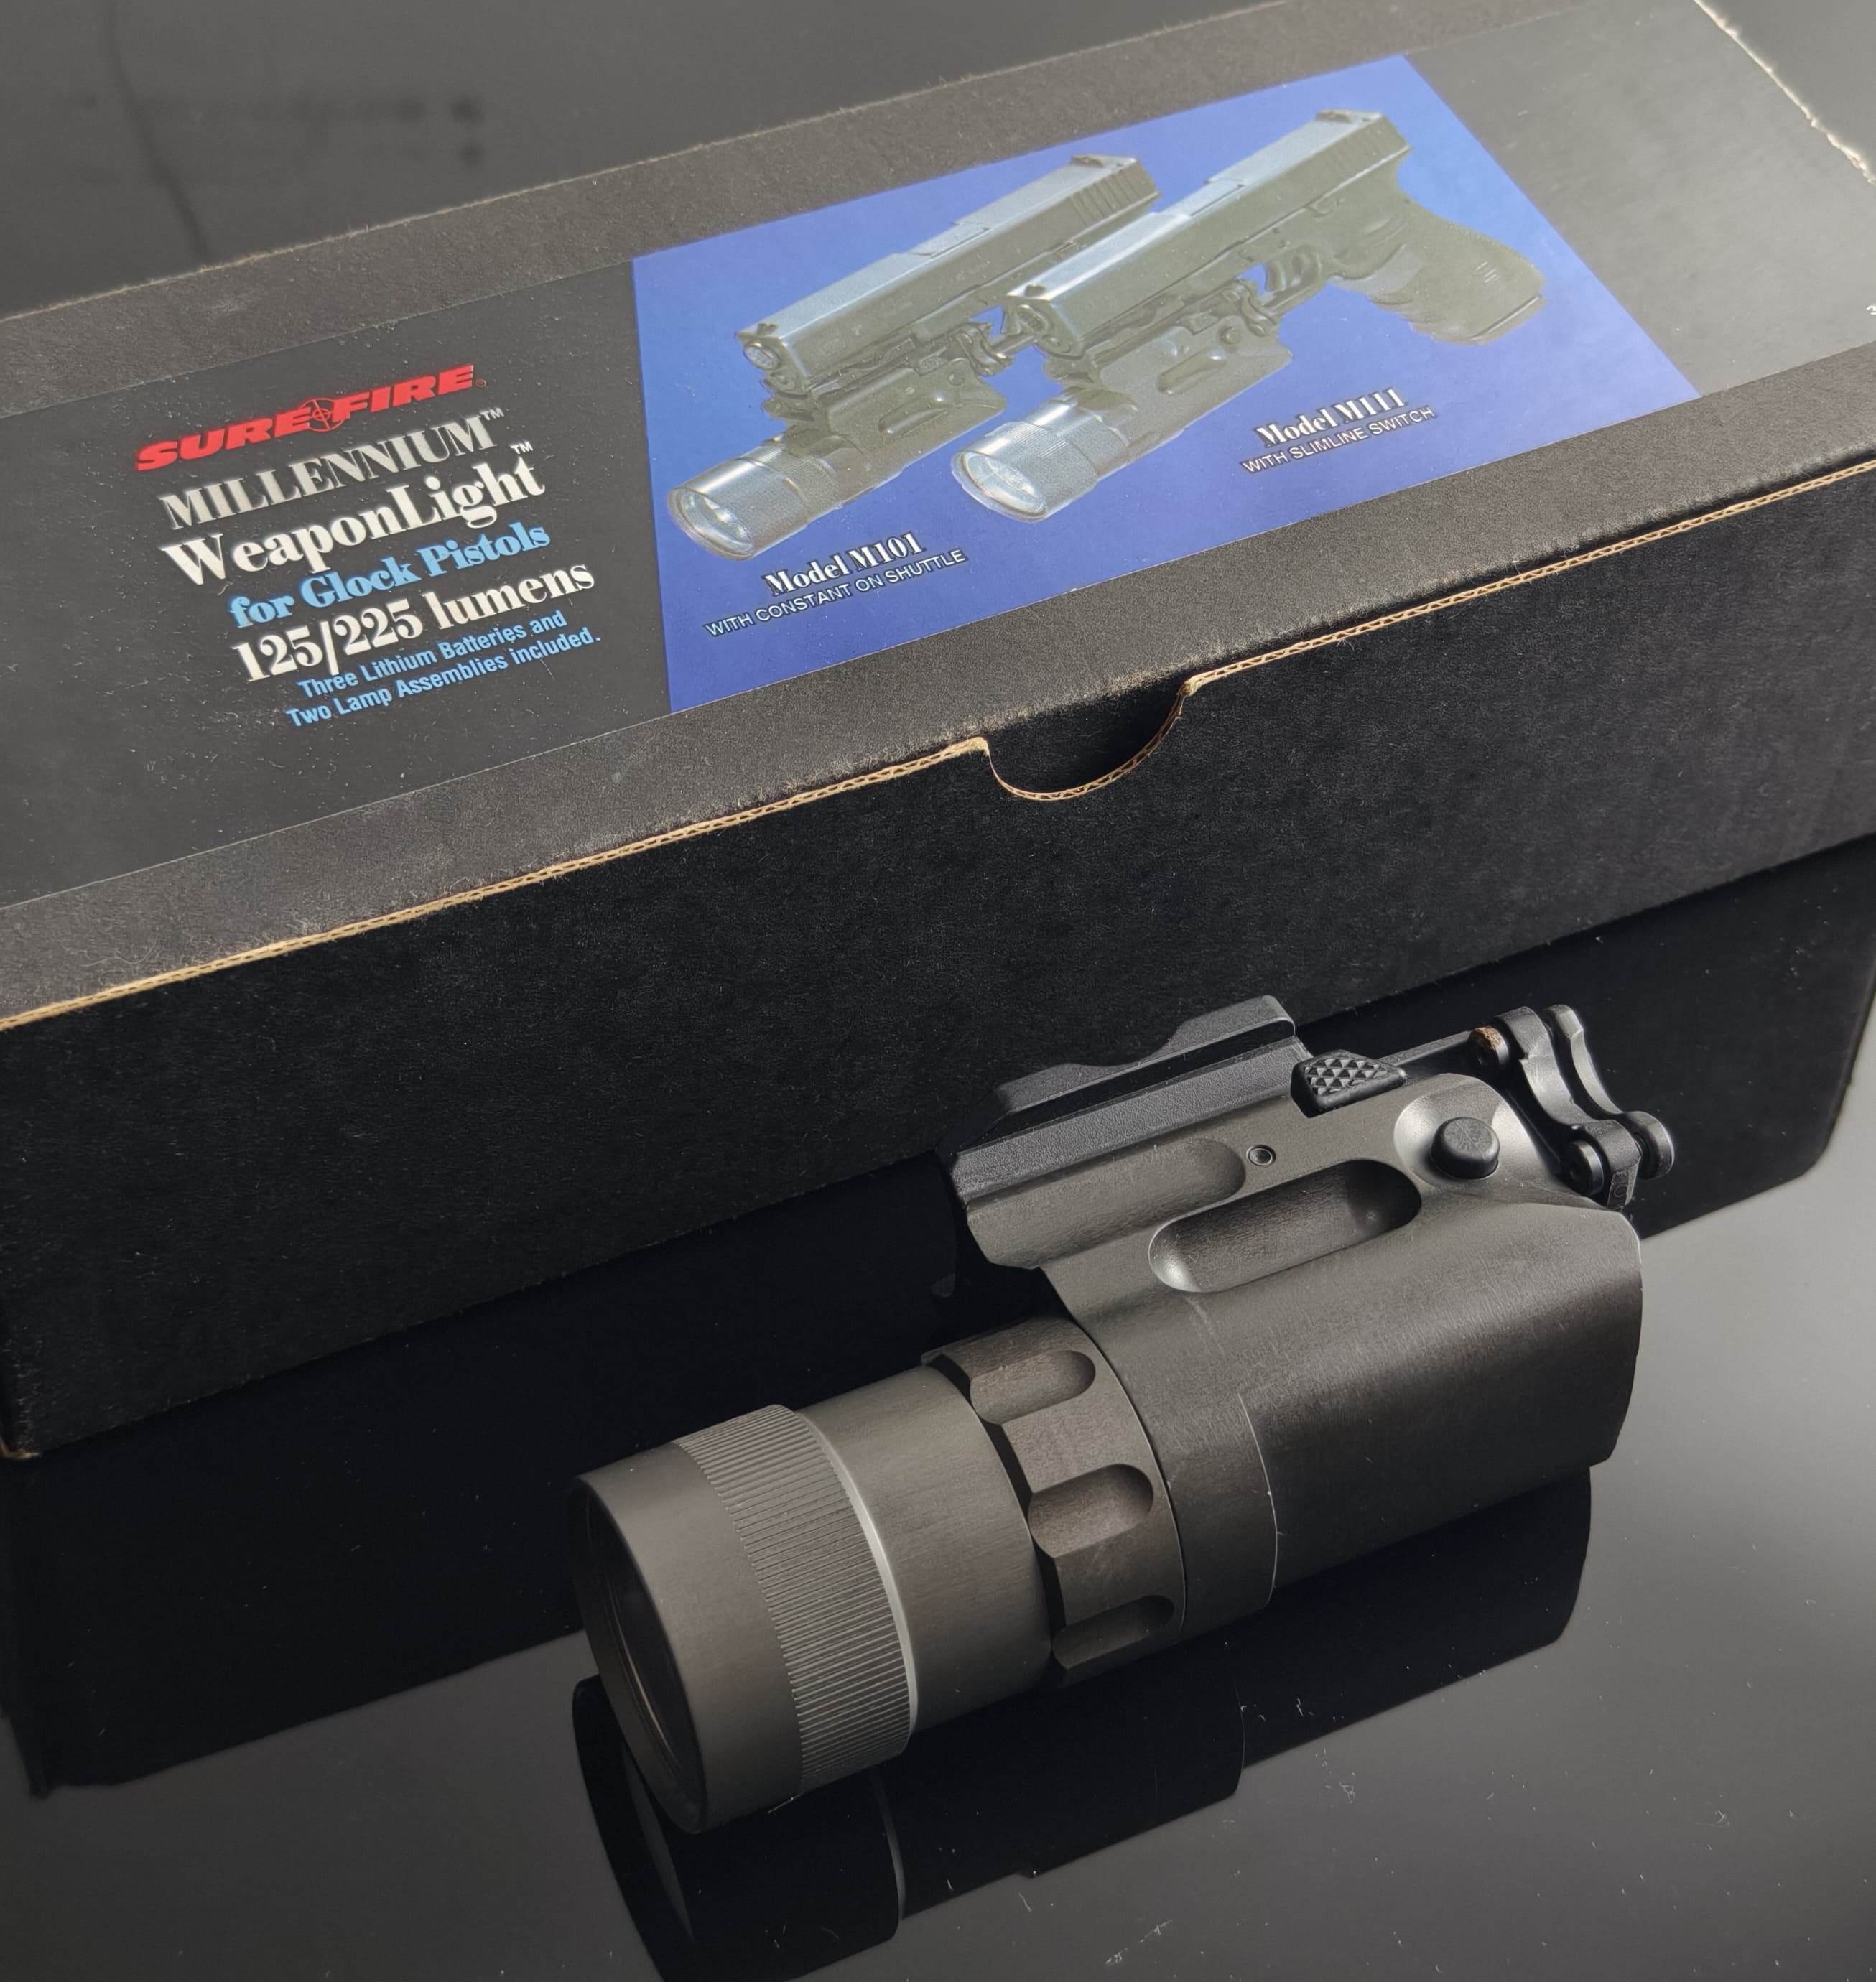 Surefire Model 101 Pistol Light for Glock Series (Pre-Owned)